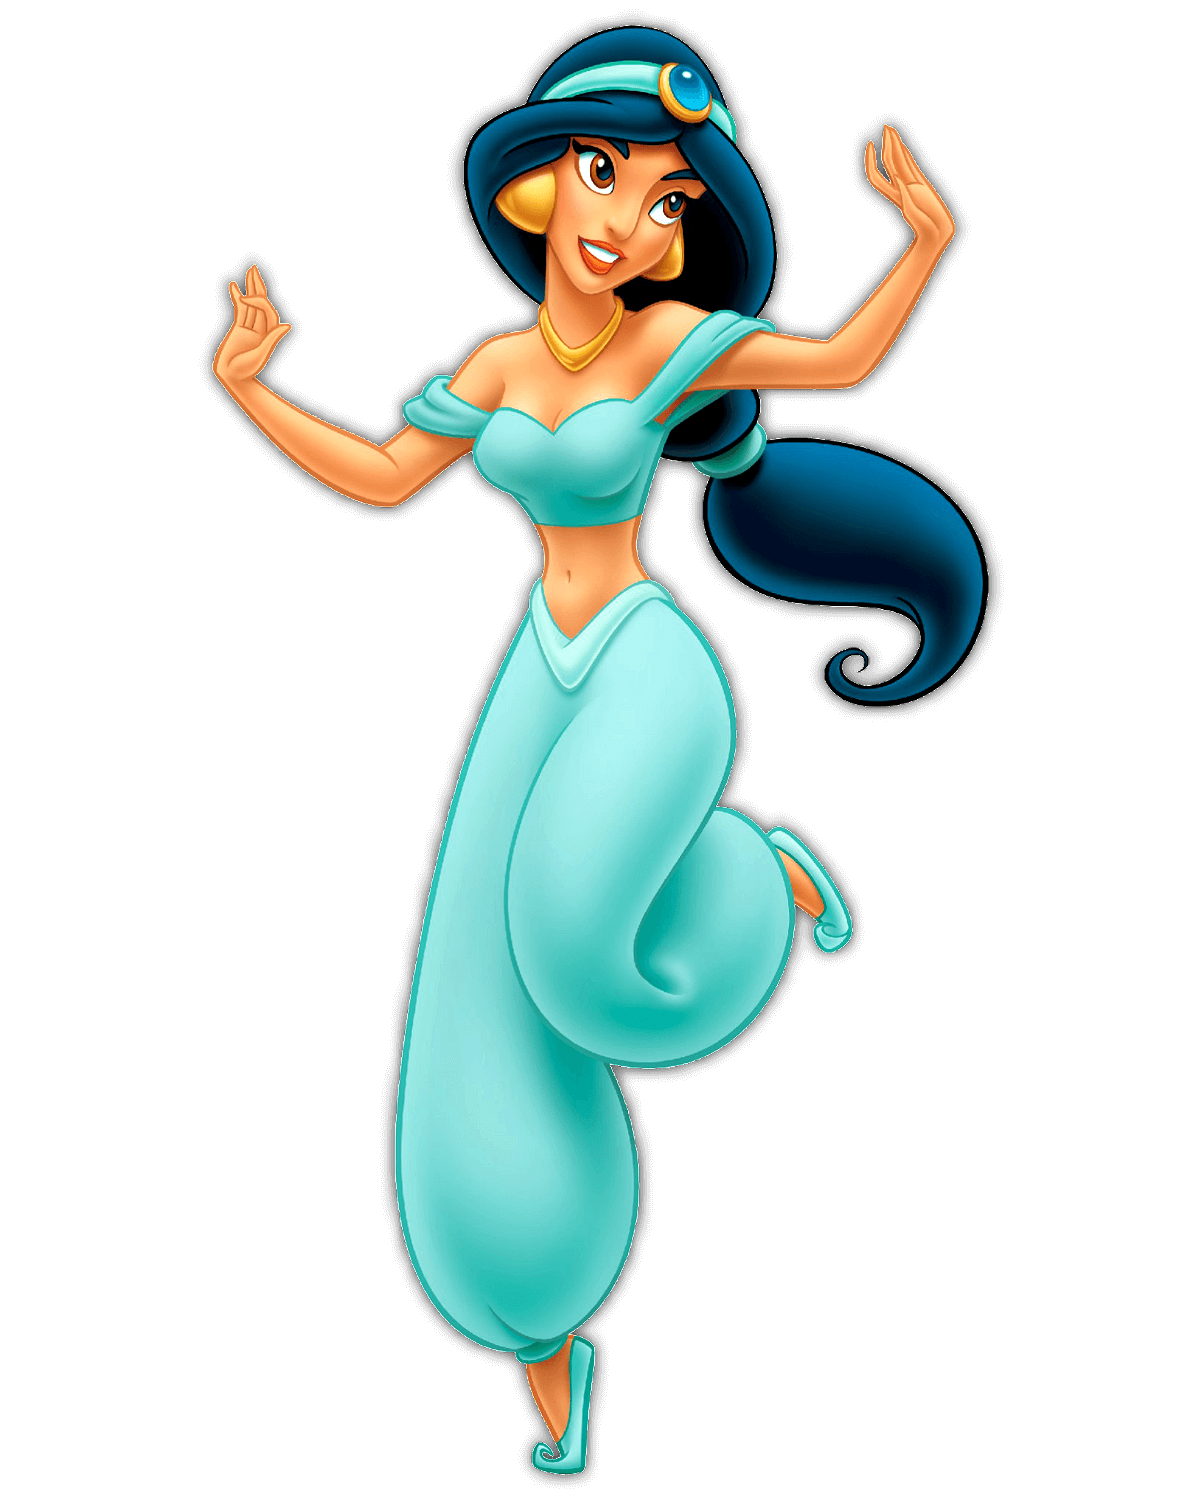 Disney Prinzessin Jasmin aus dem Film Aladdin mit wehenden langen Haaren und einem grün-türkisen Hosenanzug